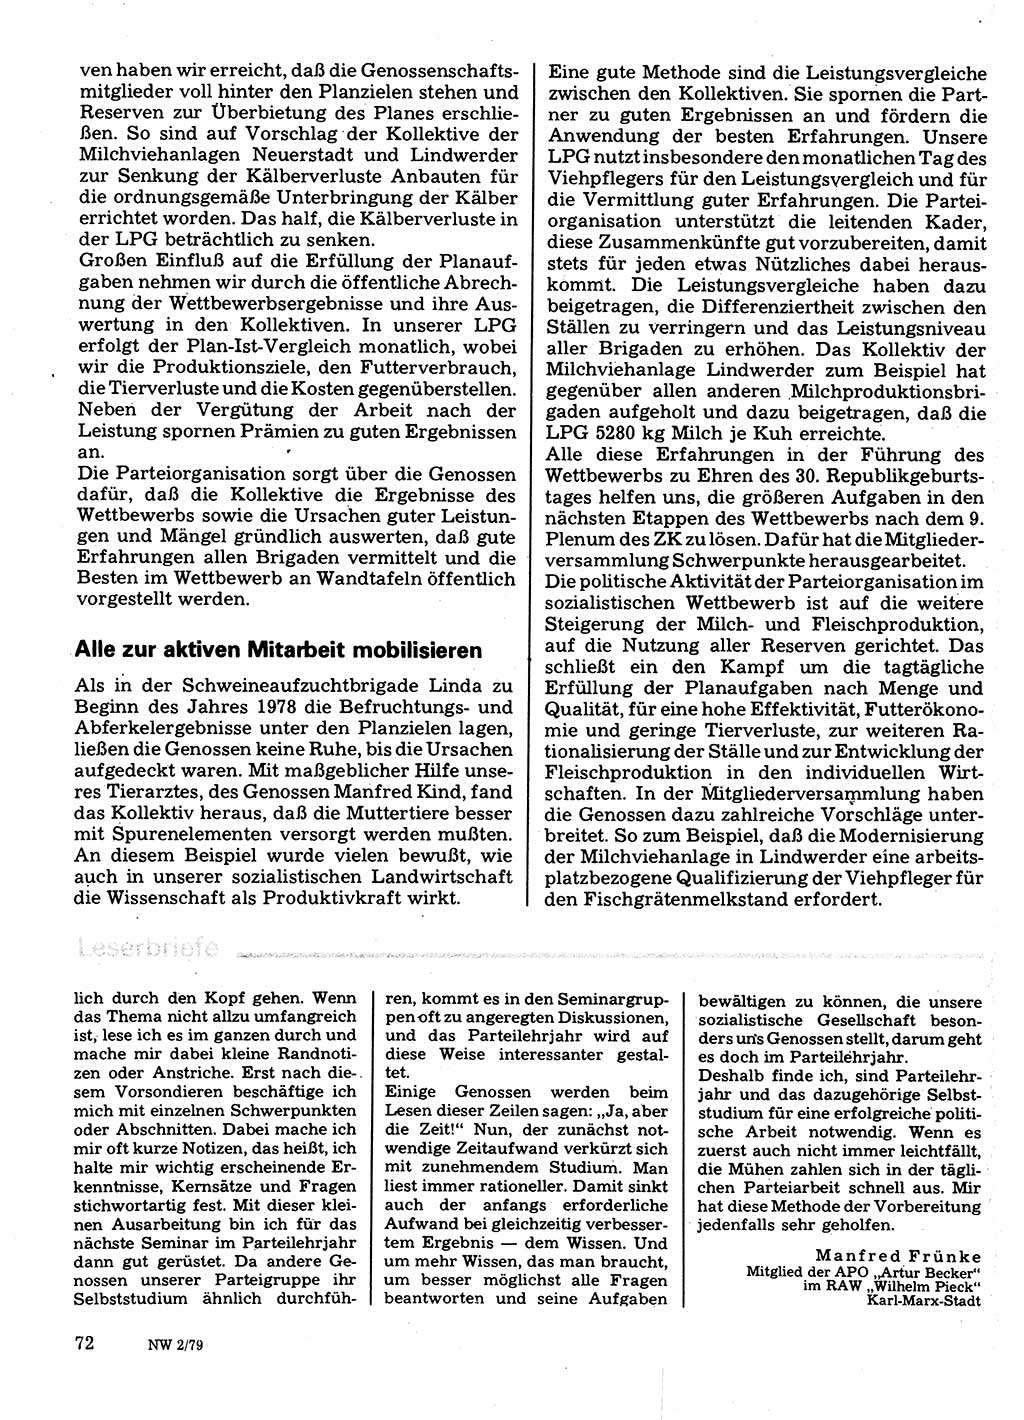 Neuer Weg (NW), Organ des Zentralkomitees (ZK) der SED (Sozialistische Einheitspartei Deutschlands) für Fragen des Parteilebens, 34. Jahrgang [Deutsche Demokratische Republik (DDR)] 1979, Seite 72 (NW ZK SED DDR 1979, S. 72)